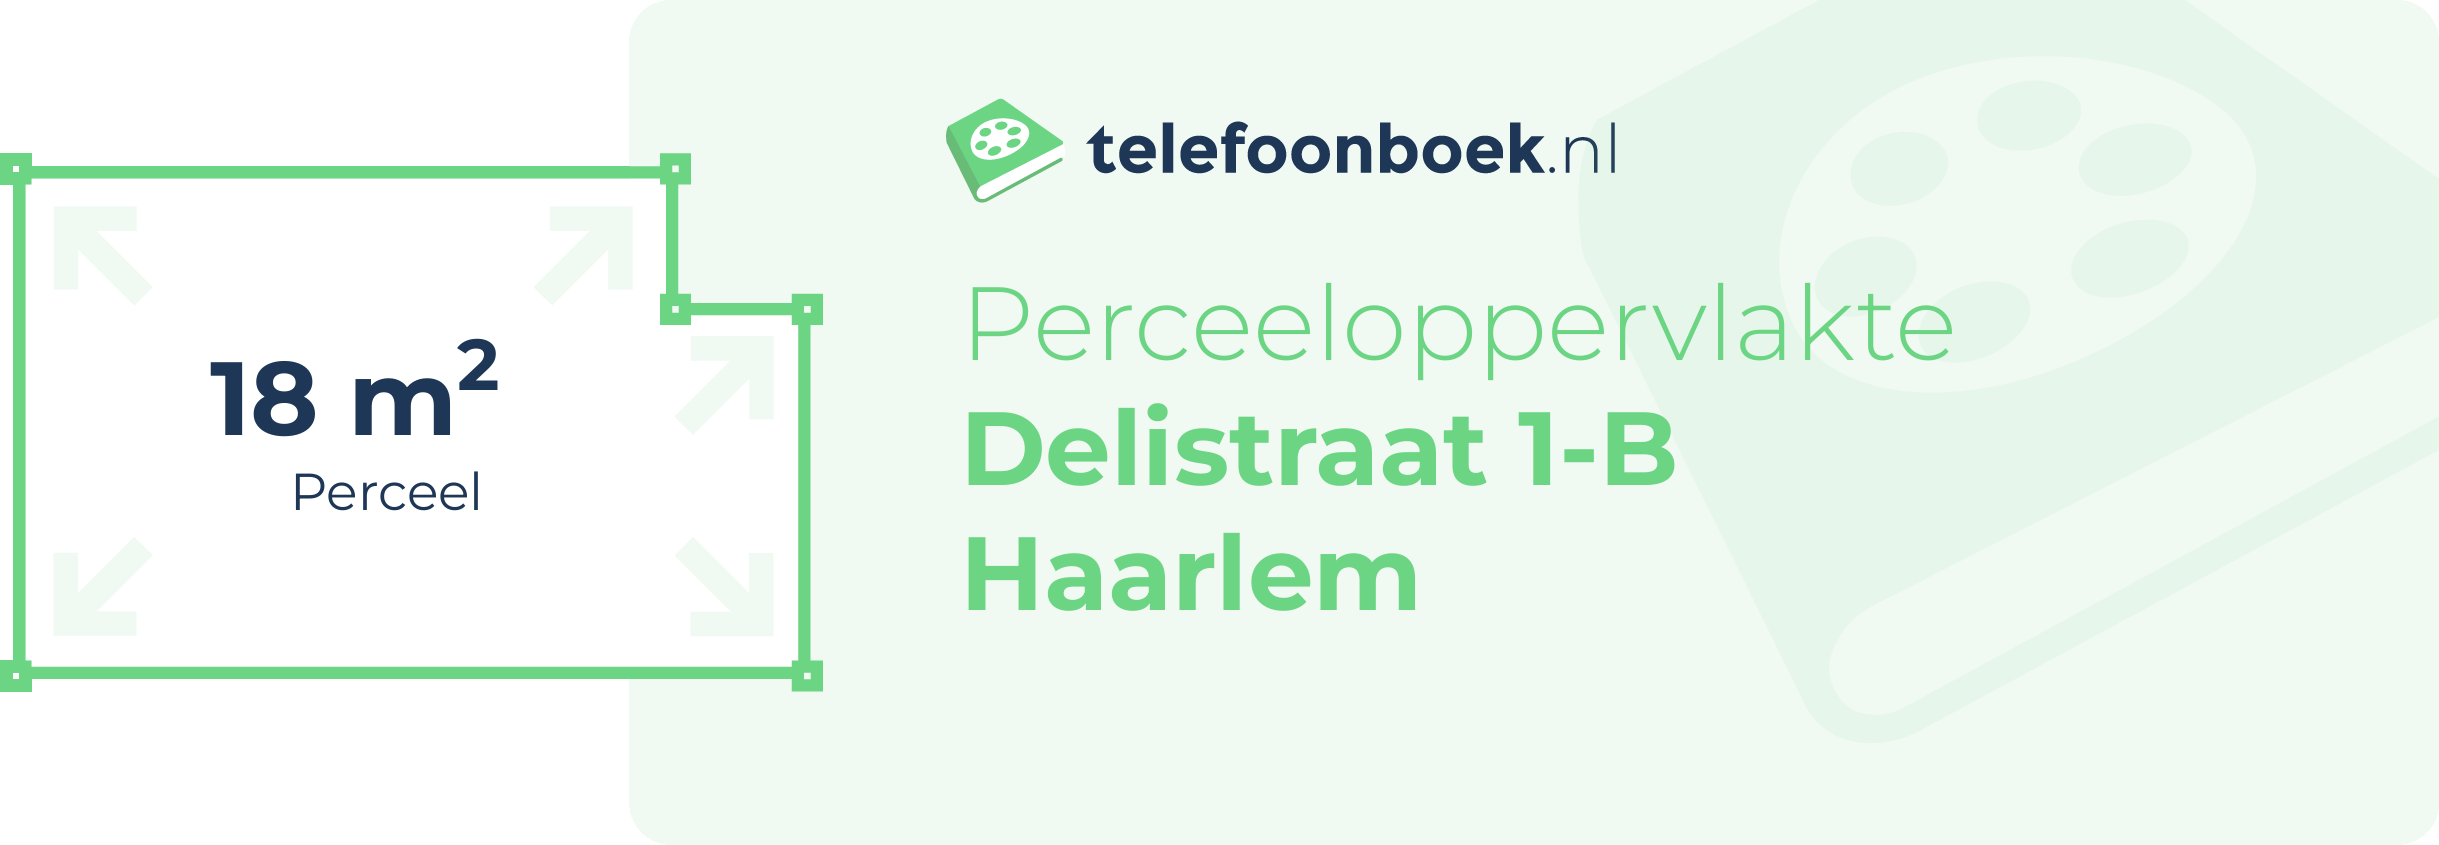 Perceeloppervlakte Delistraat 1-B Haarlem